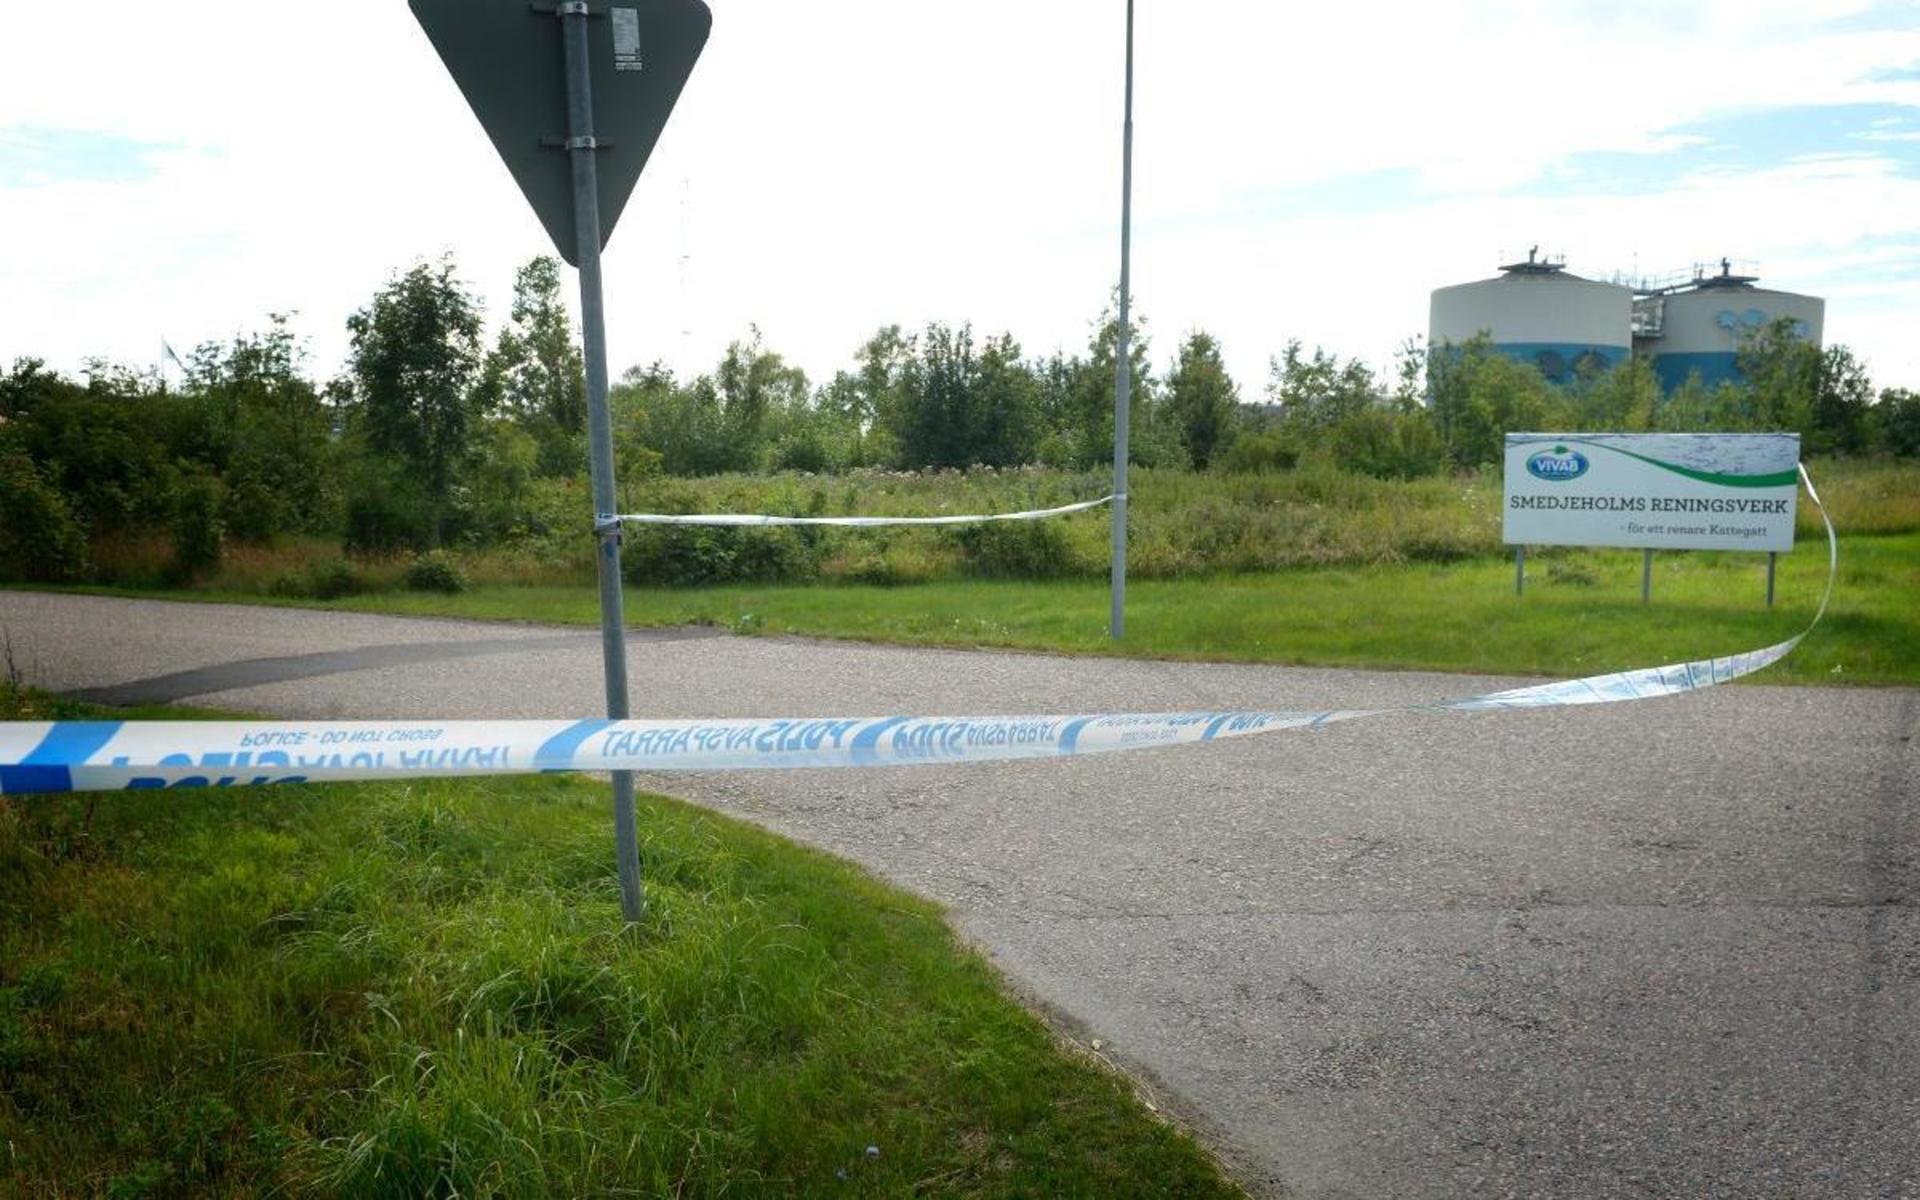 Den 18 juli blev en kvinna svårt skadad efter ett överfall i närheten av Smedjeholm reningsverk.